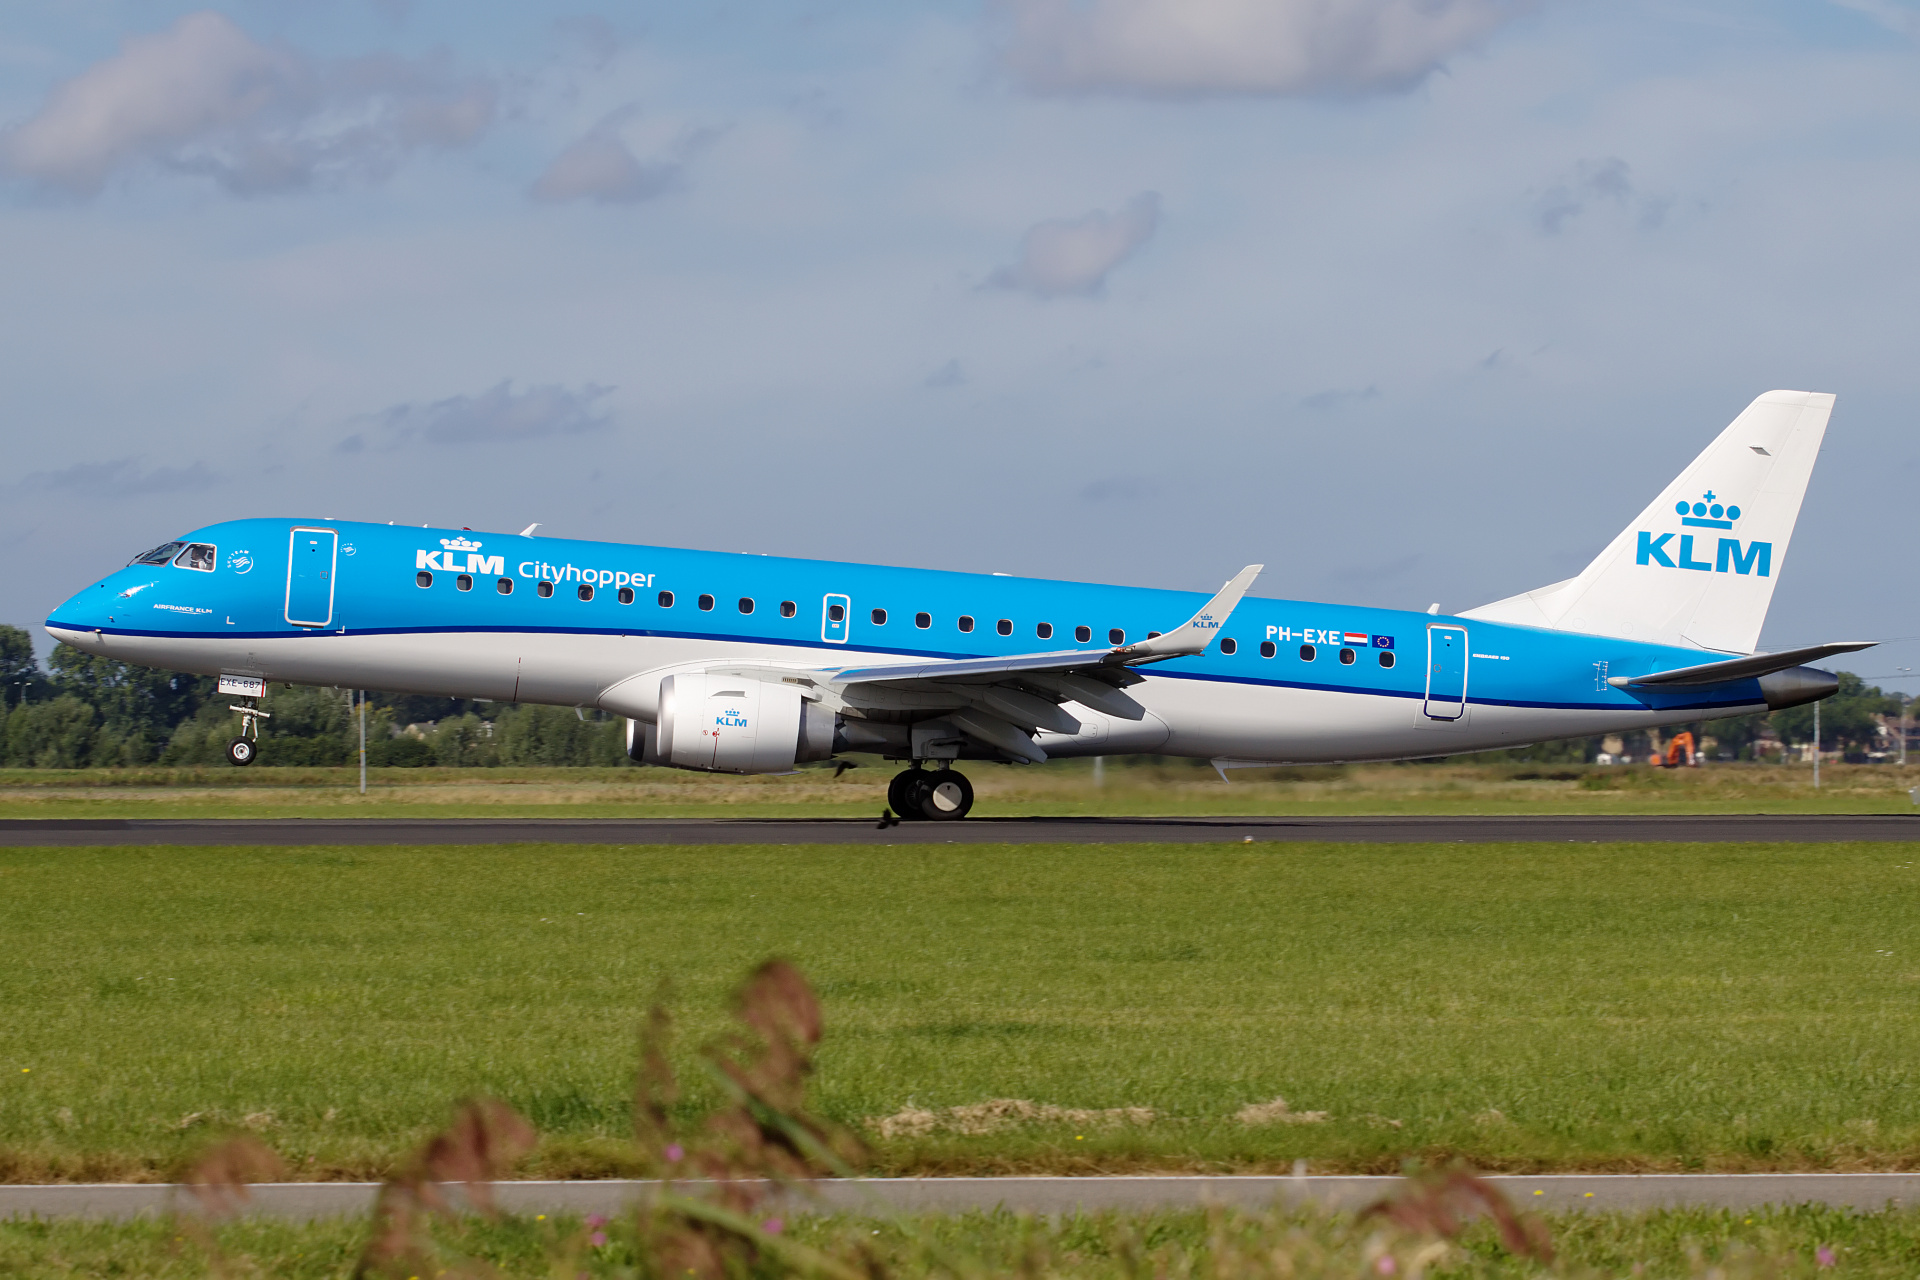 PH-EXE (Aircraft » Schiphol Spotting » Embraer E190 » KLM Cityhopper)